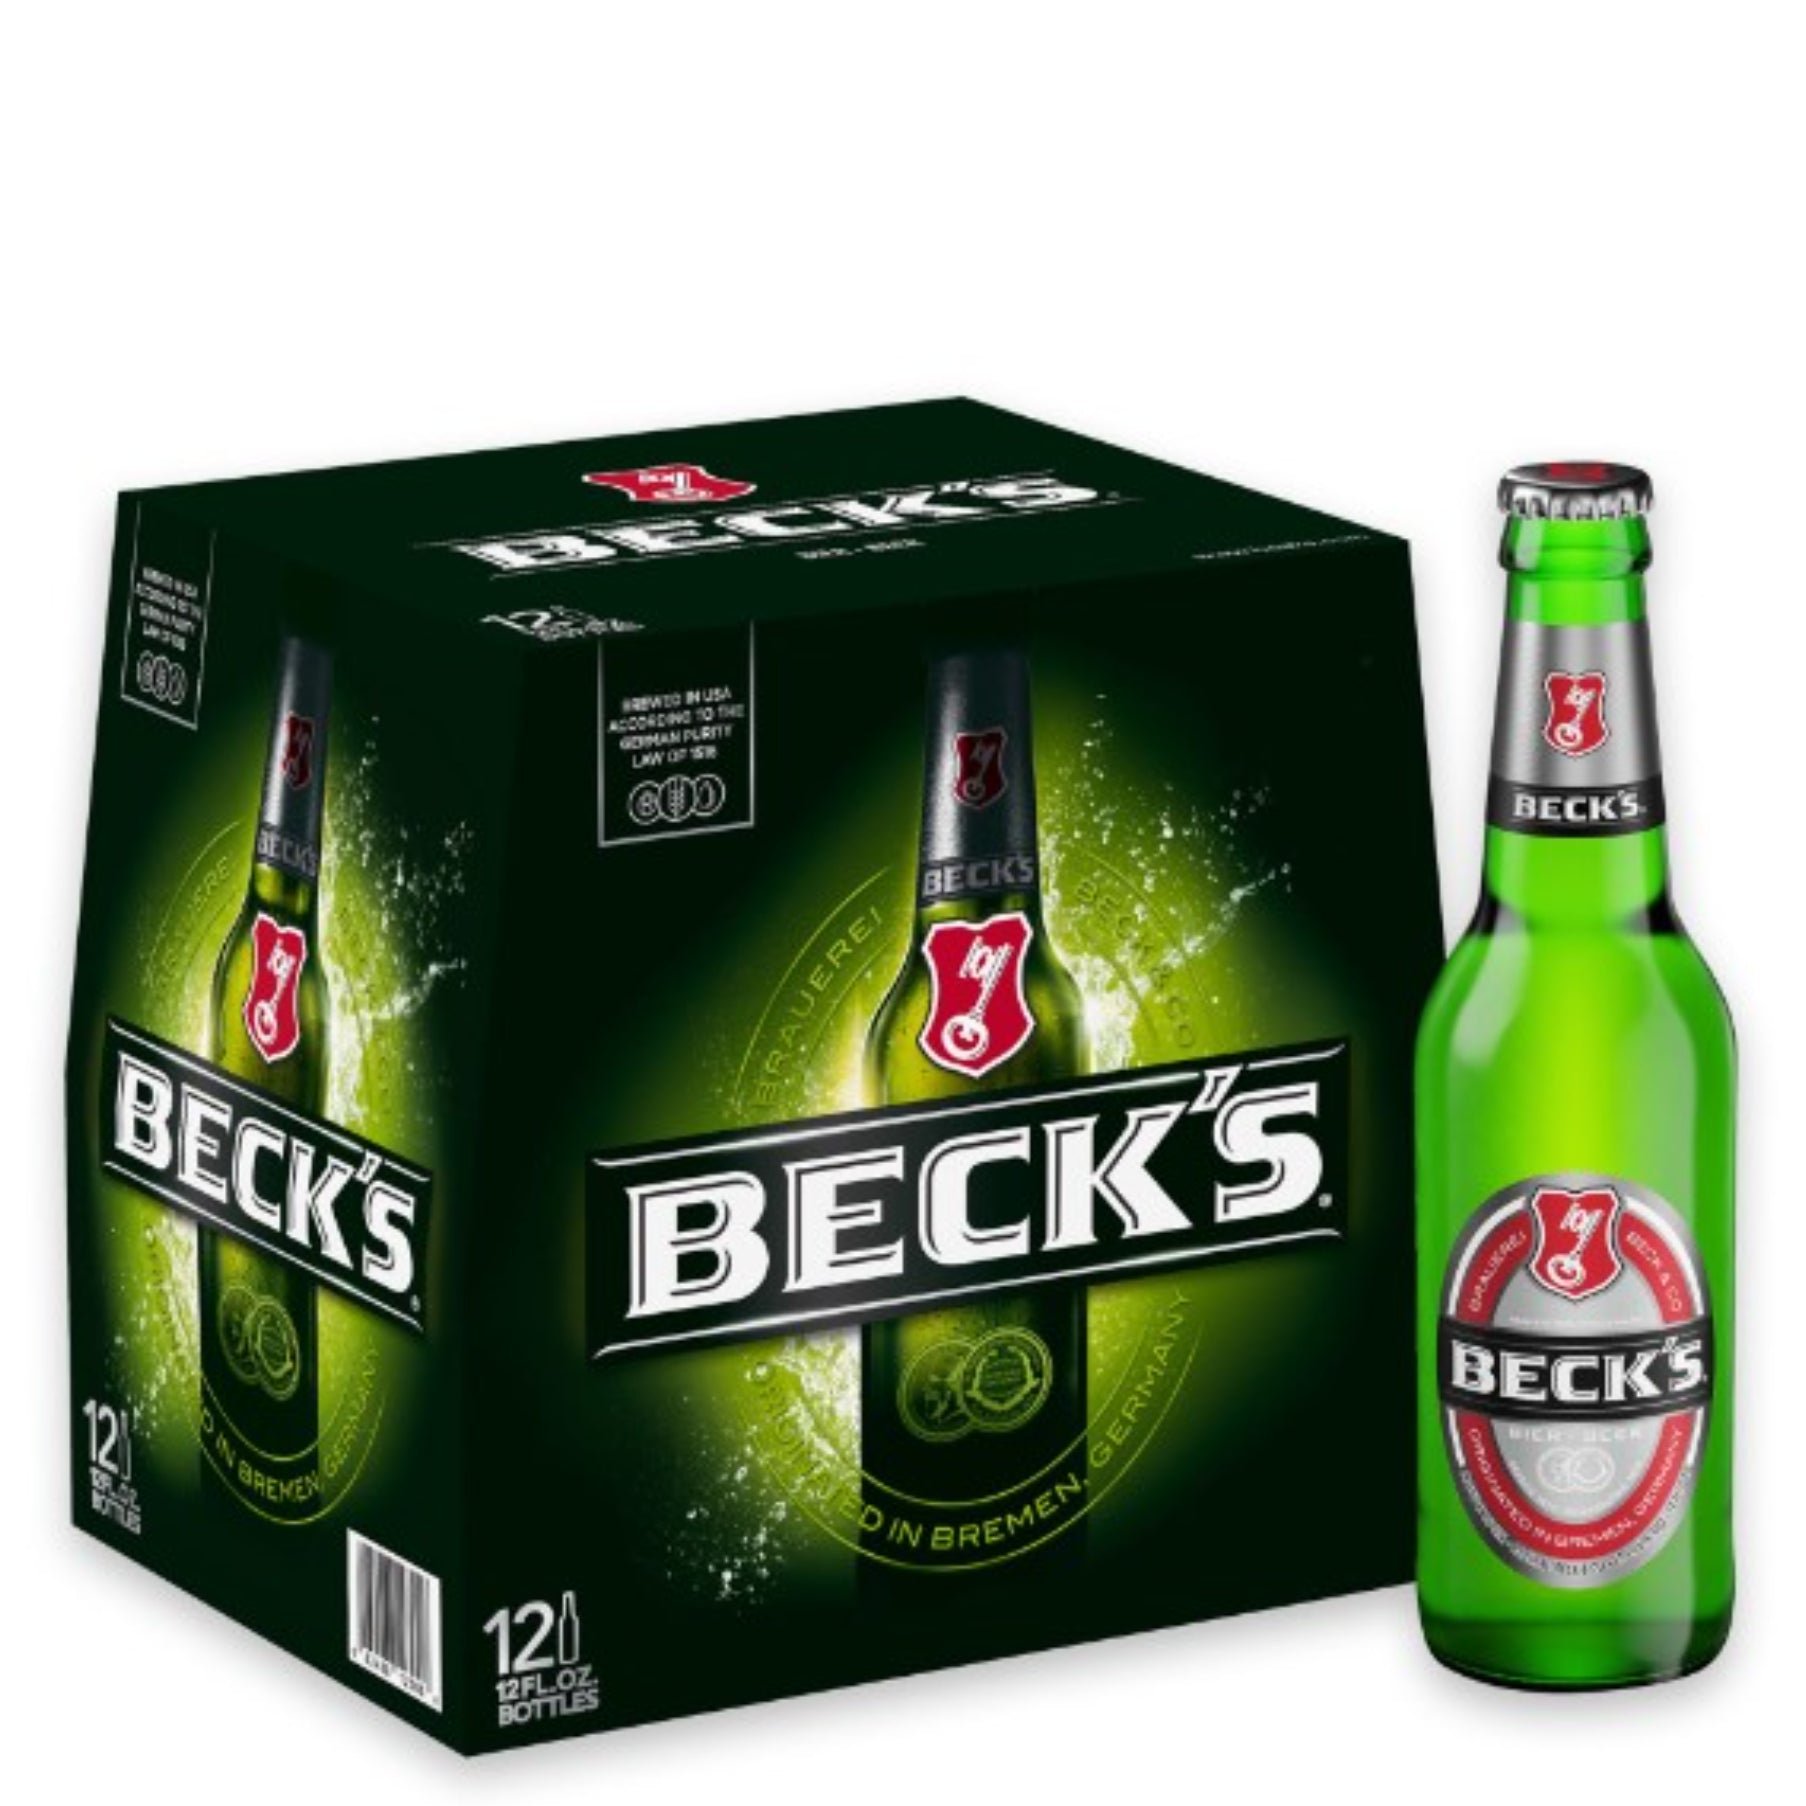 Heineken 24pk 12oz Btl 5.0% ABV